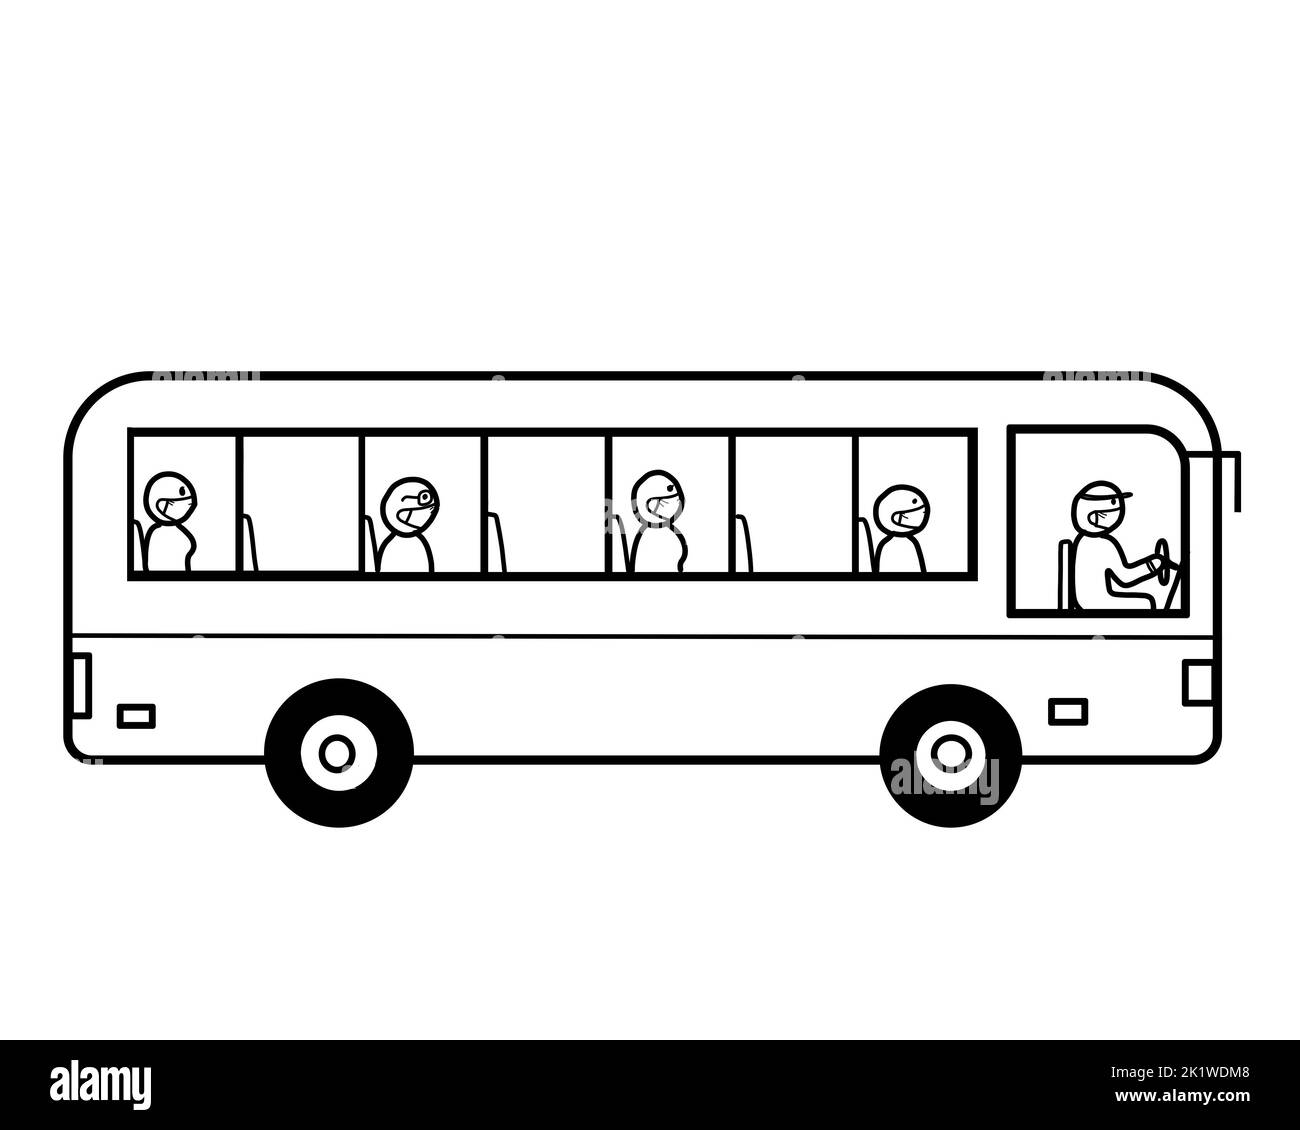 Un bus public avec un groupe de passagers personnes portant un masque facial de protection, distanciation sociale. Concept de transit, de santé et de sécurité masqué. Banque D'Images